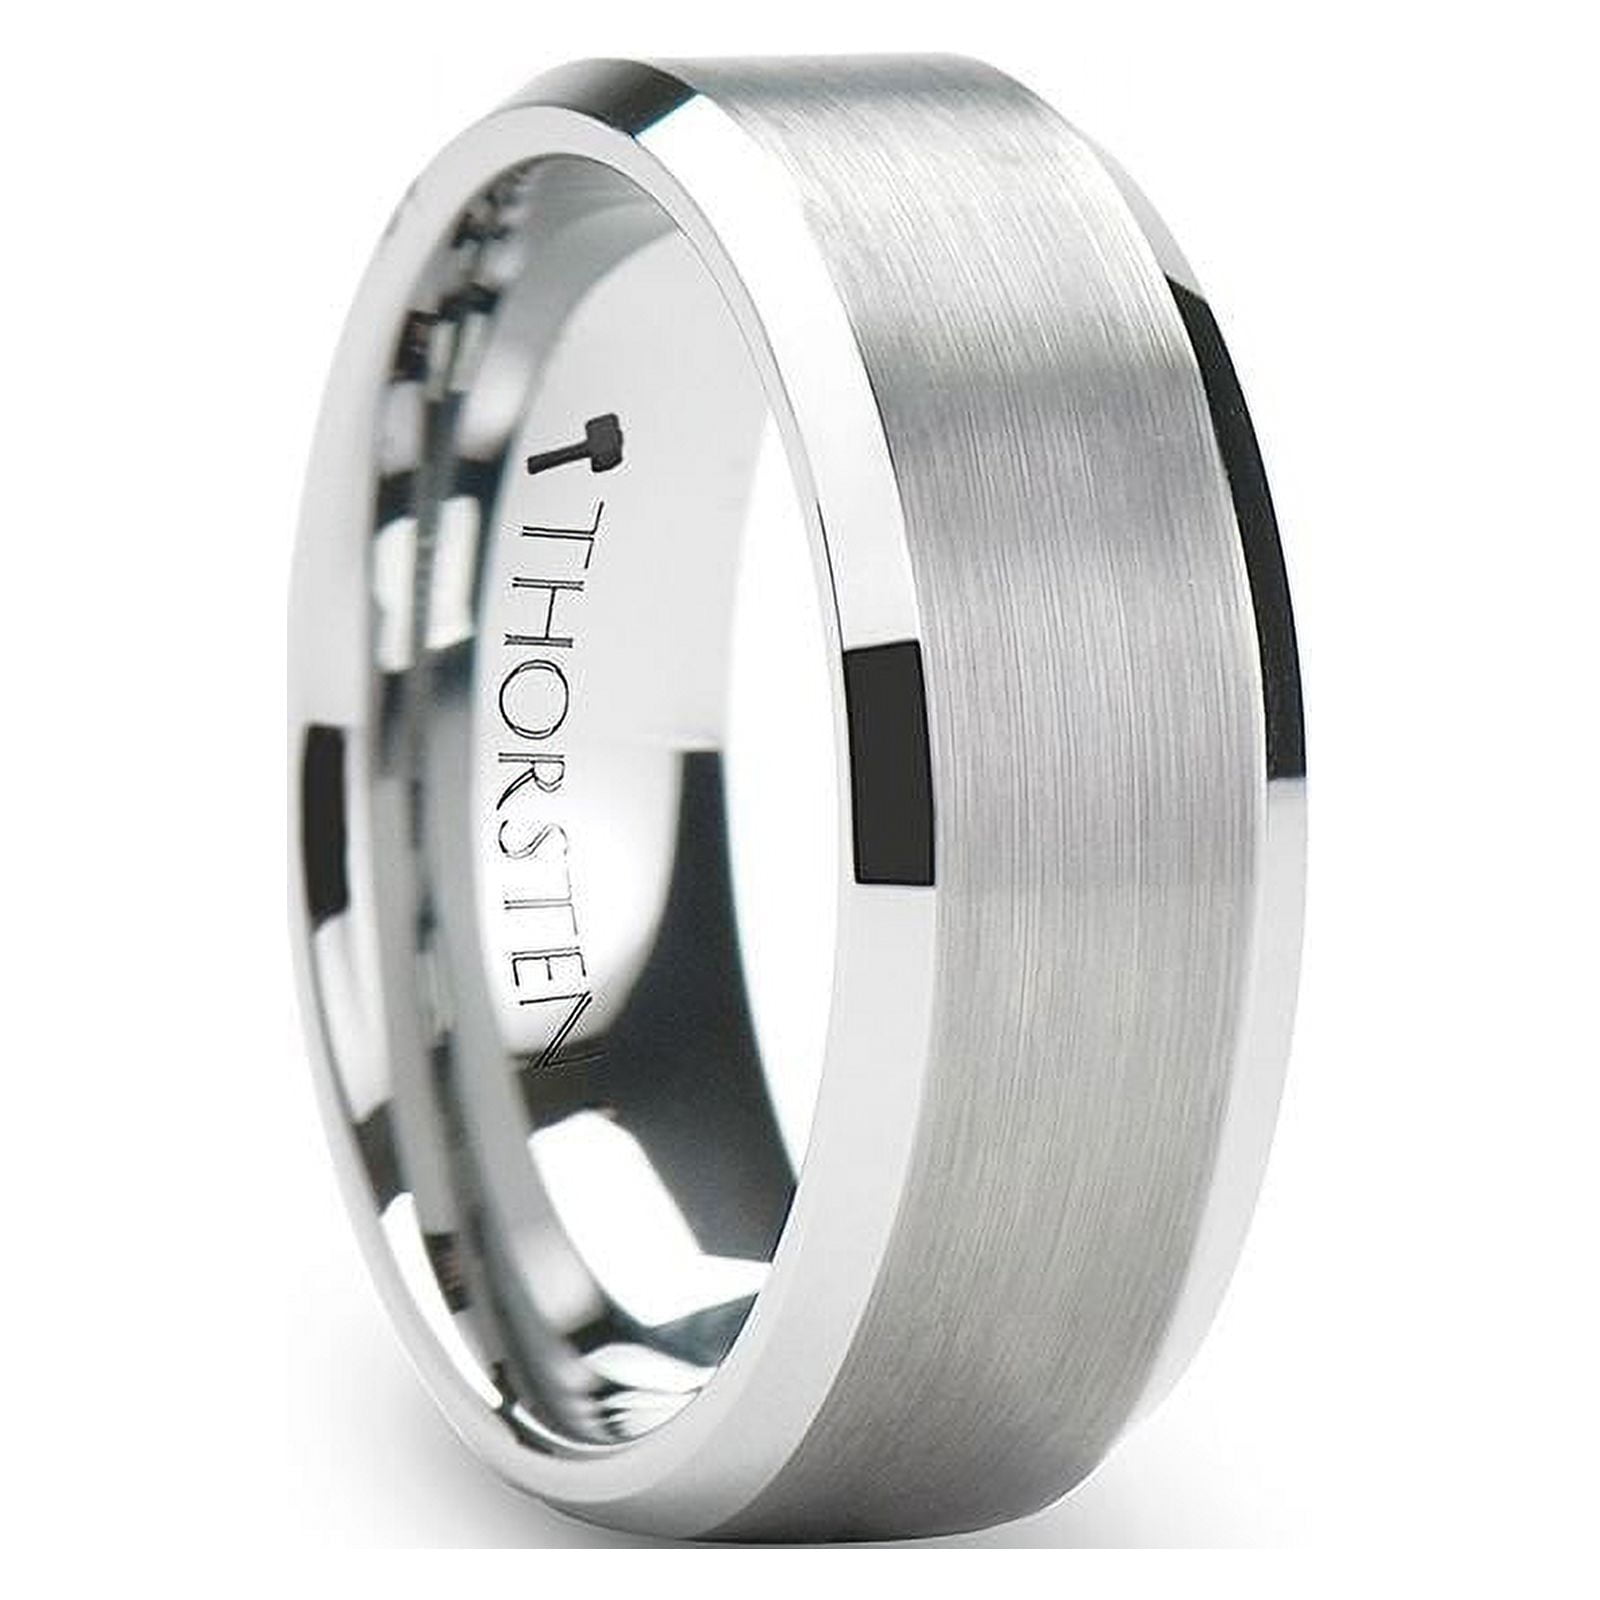 Sheffield Men Tungsten Wedding Ring Polished Beveled Edges 23fde817 f46b 4344 a5e4 0fce01306026.3a5a55271141f81028454de1ff6720ca